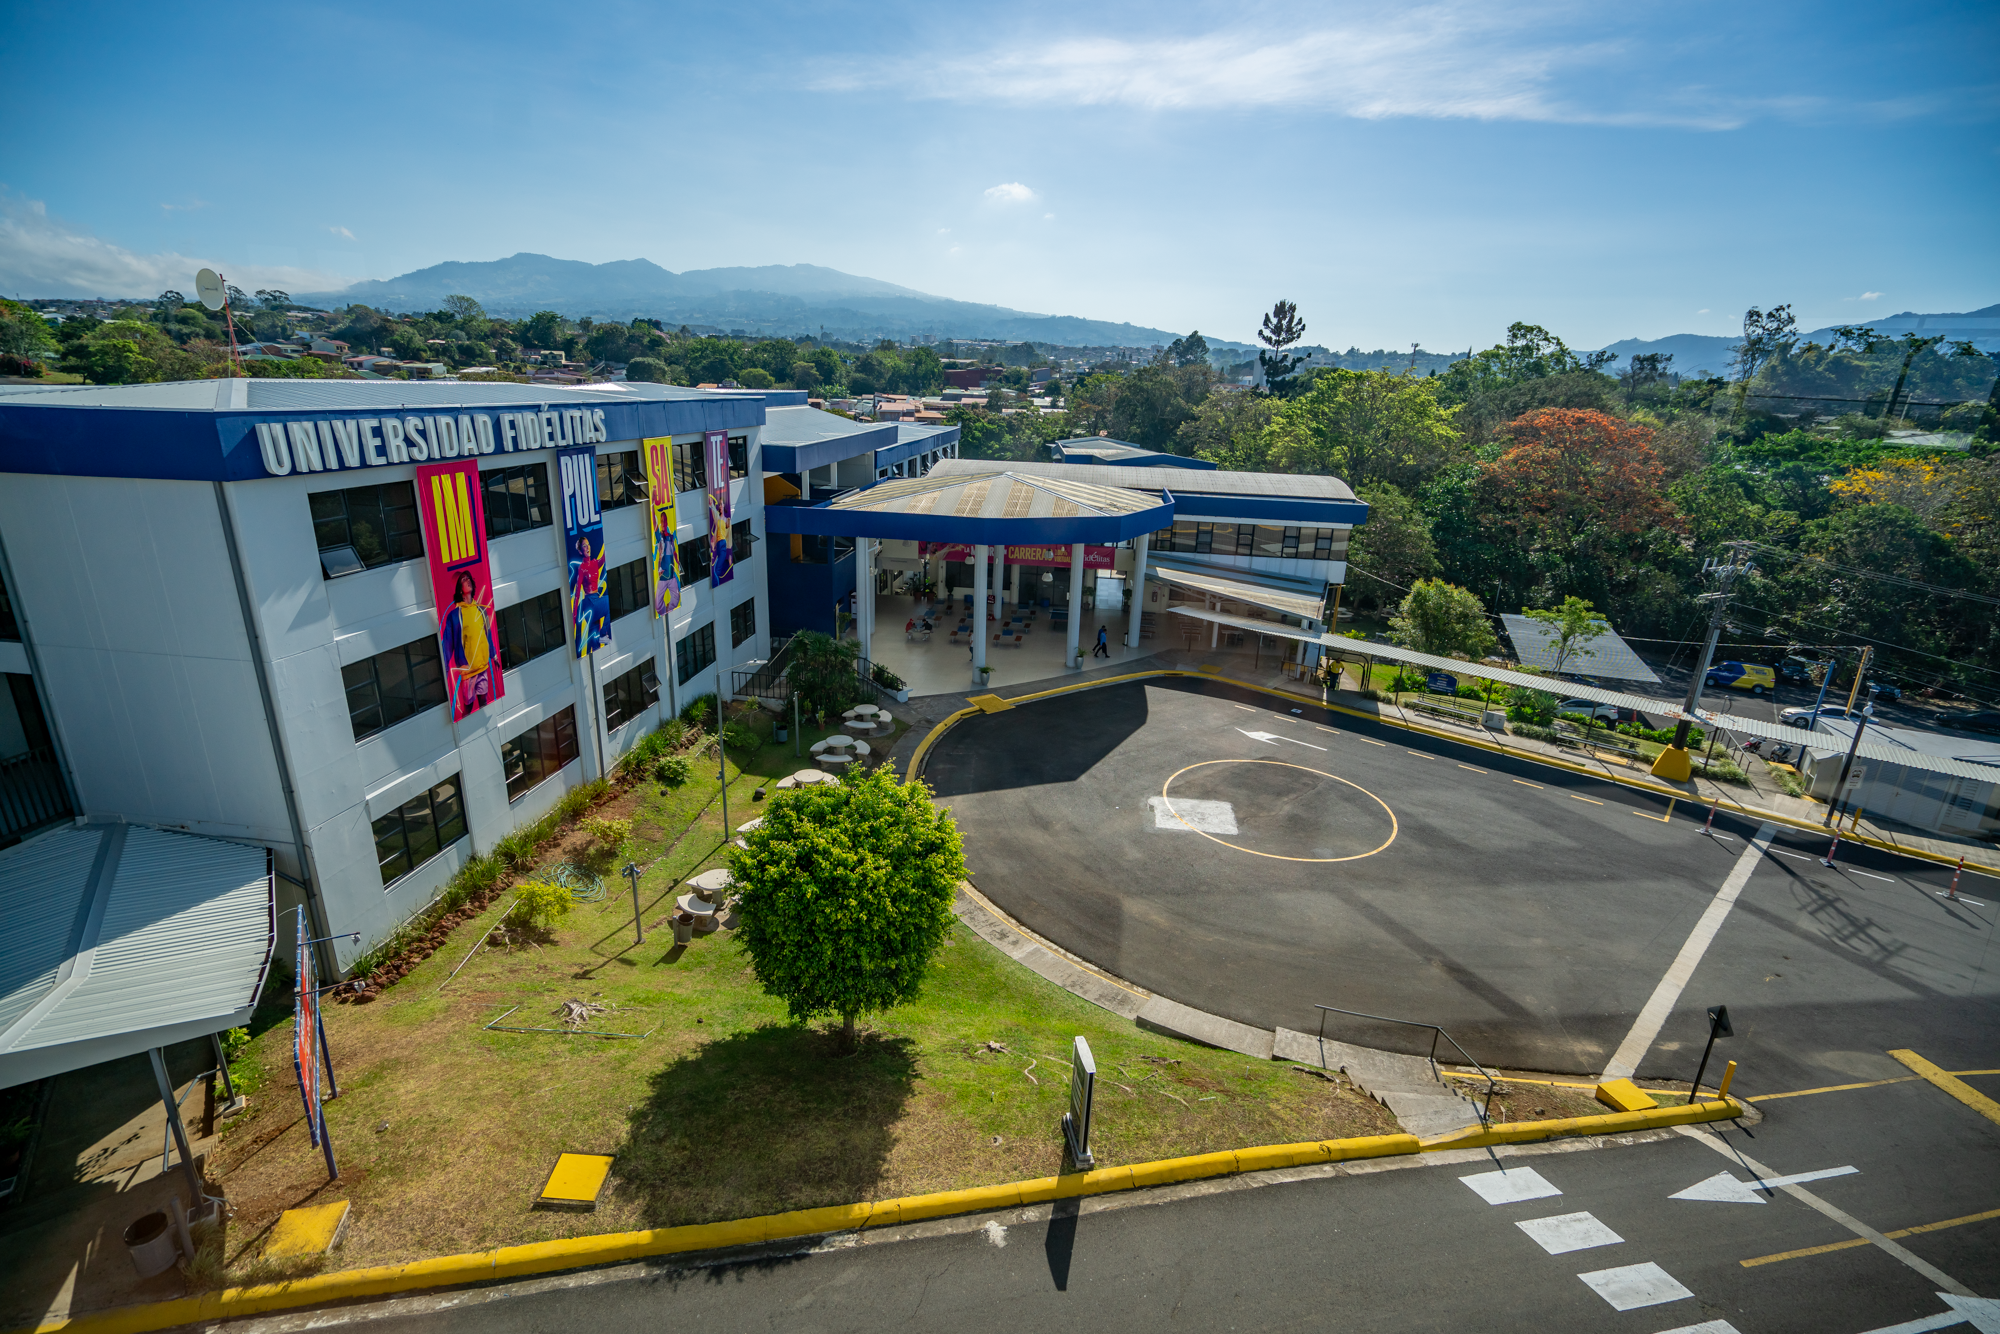 Universidad Fidelitas' campus